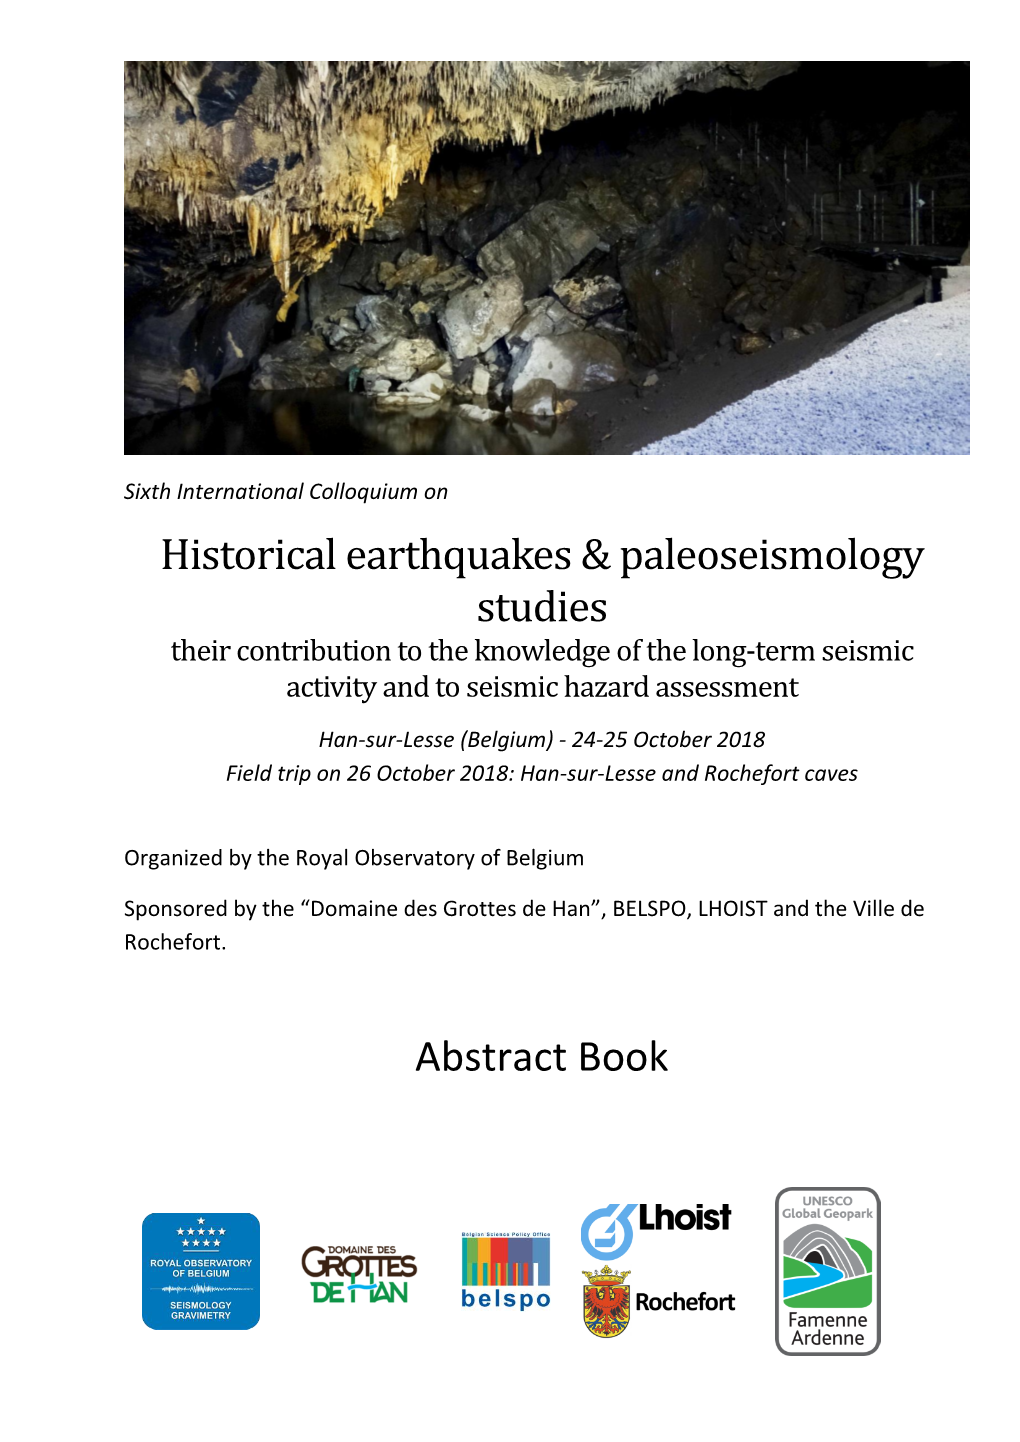 Historical Earthquakes & Paleoseismology Studies